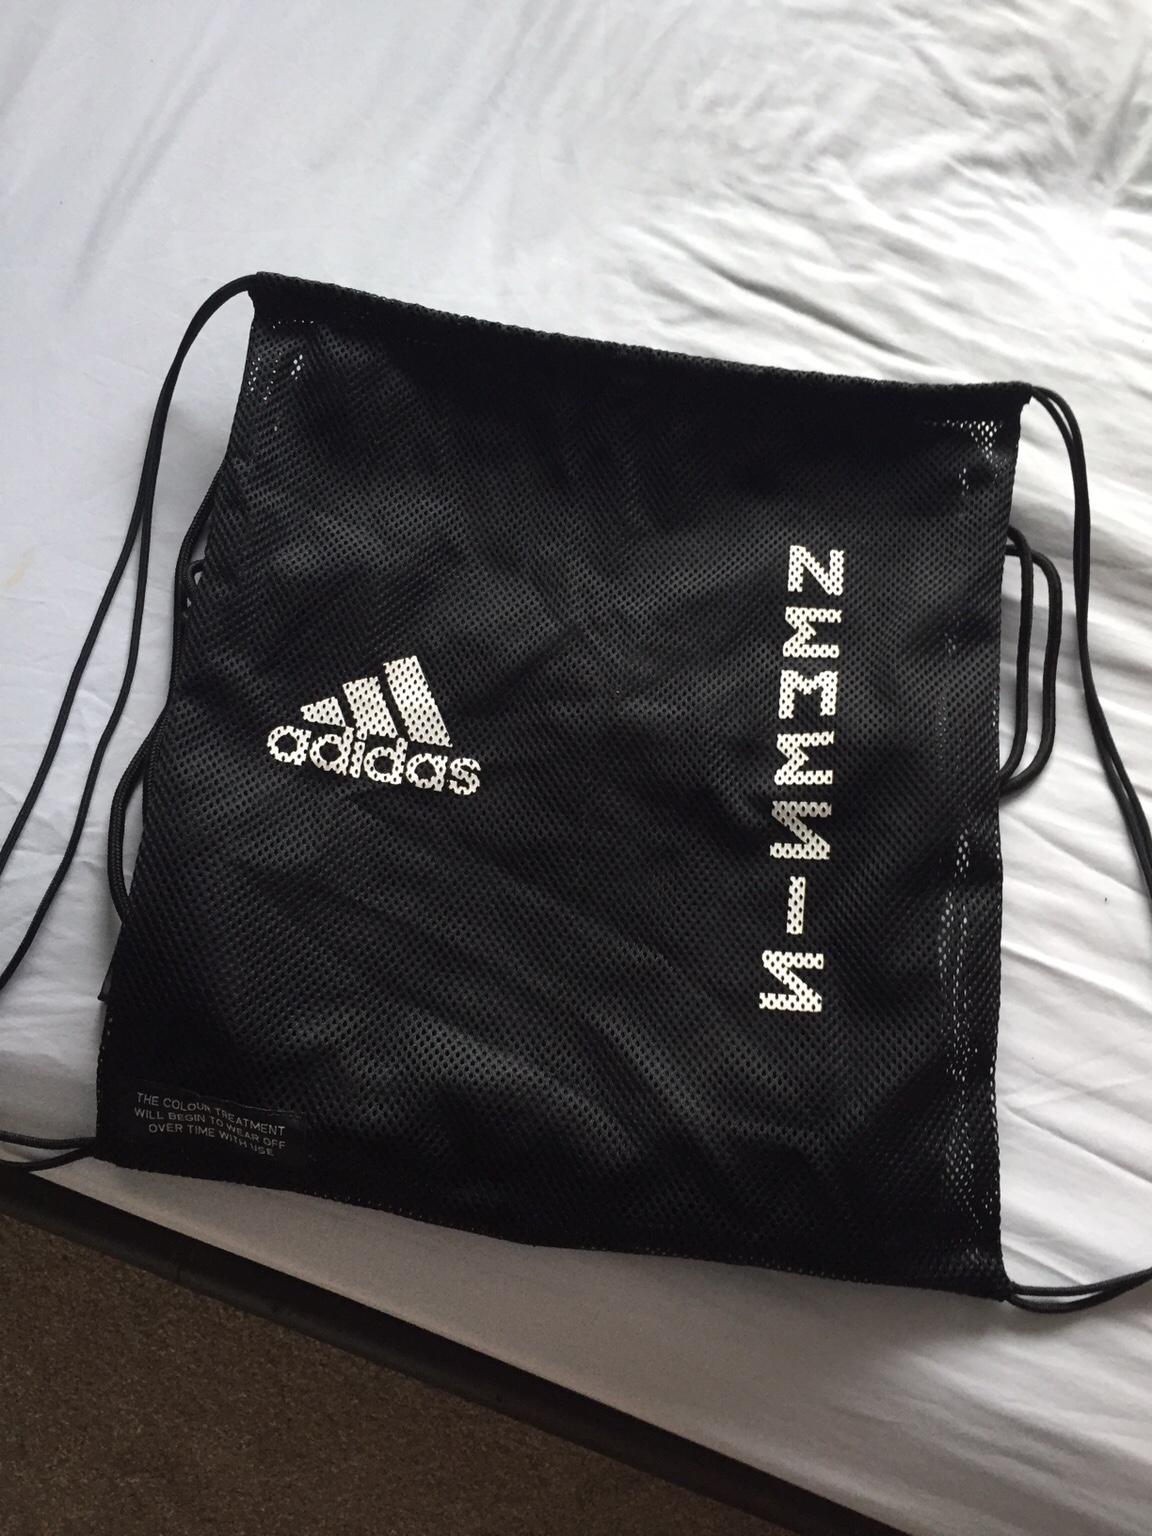 adidas football boot bag